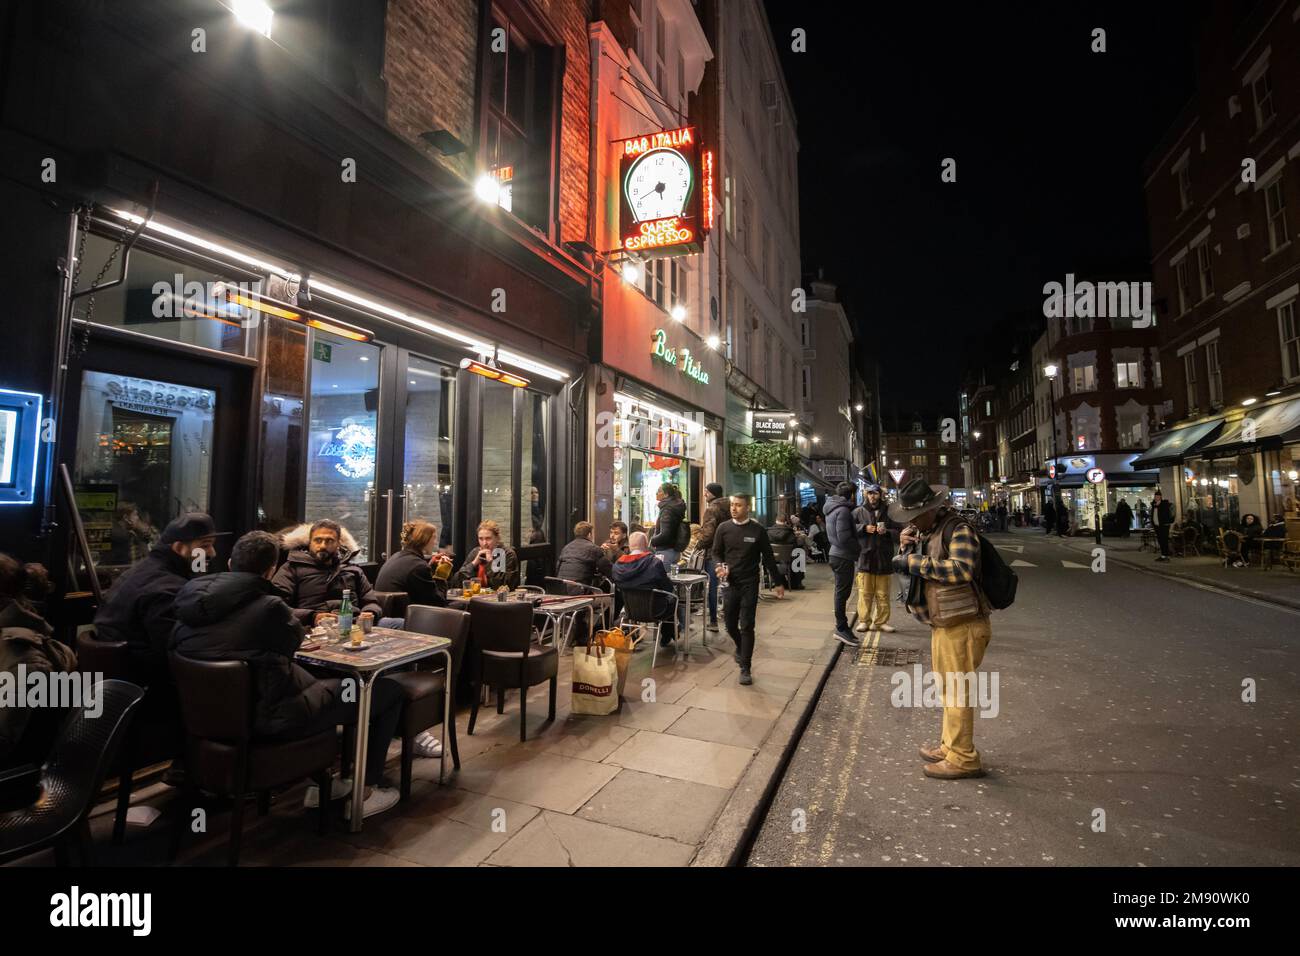 Les gens s'assoient devant un café/bar à Soho, le long de Greek Street, la nuit, dans le West End de Londres, en Angleterre, au Royaume-Uni Banque D'Images